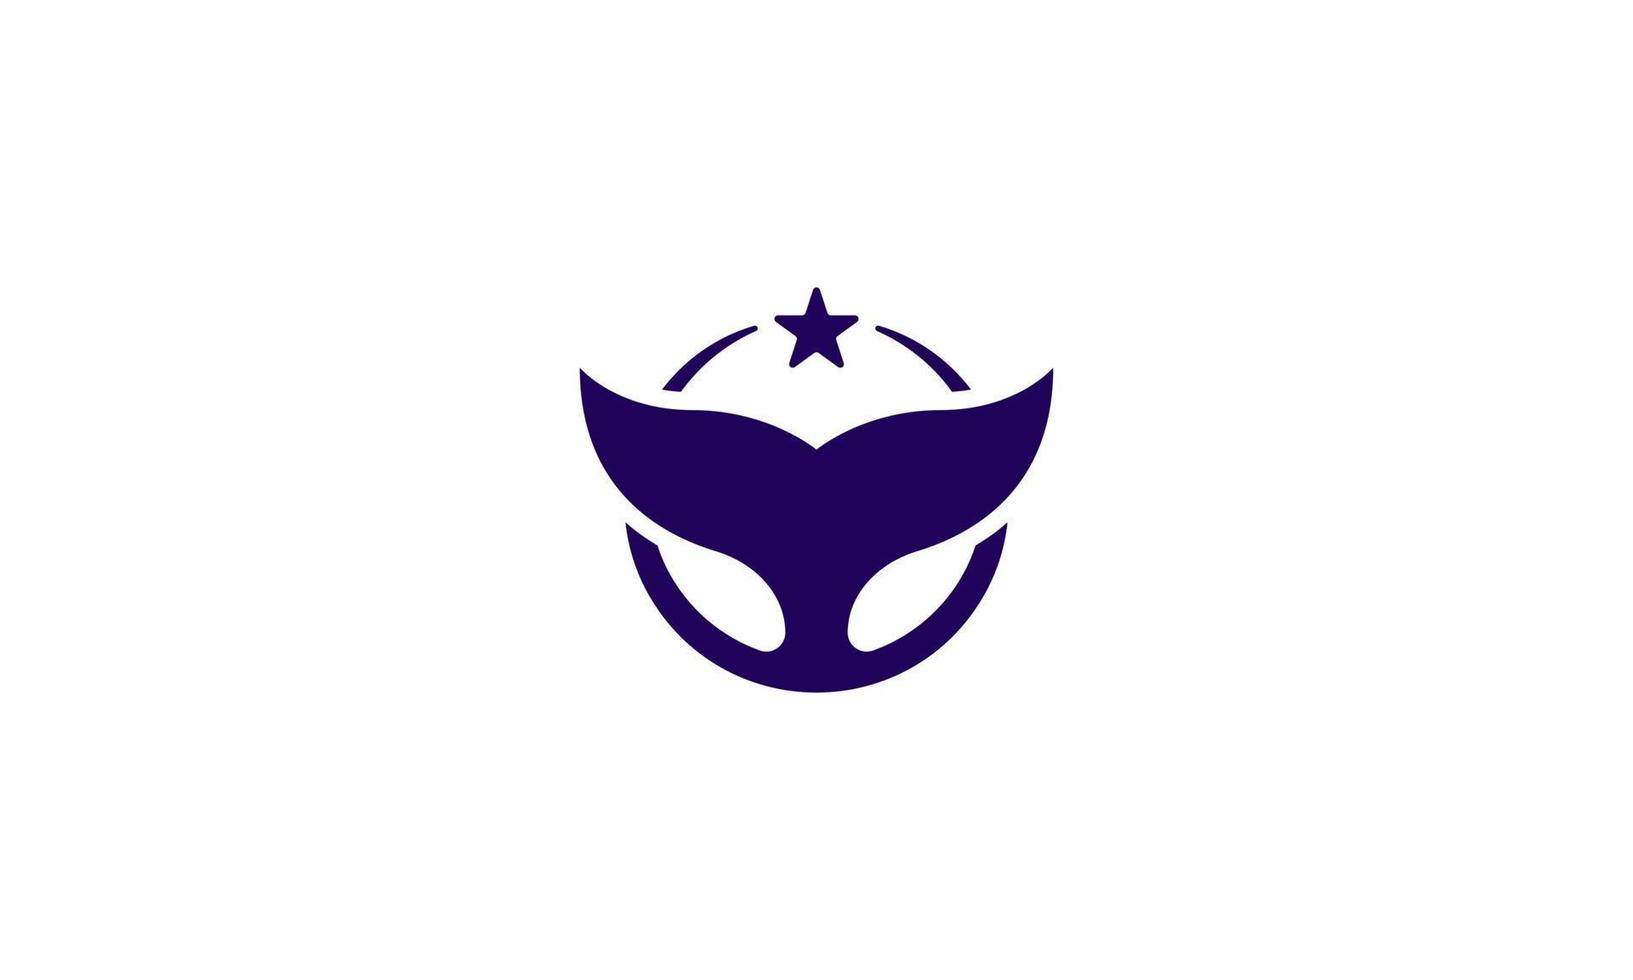 disegno del logo della stella della balena. coda di balena o pinna con stella su di essa. illustrazione vettoriale